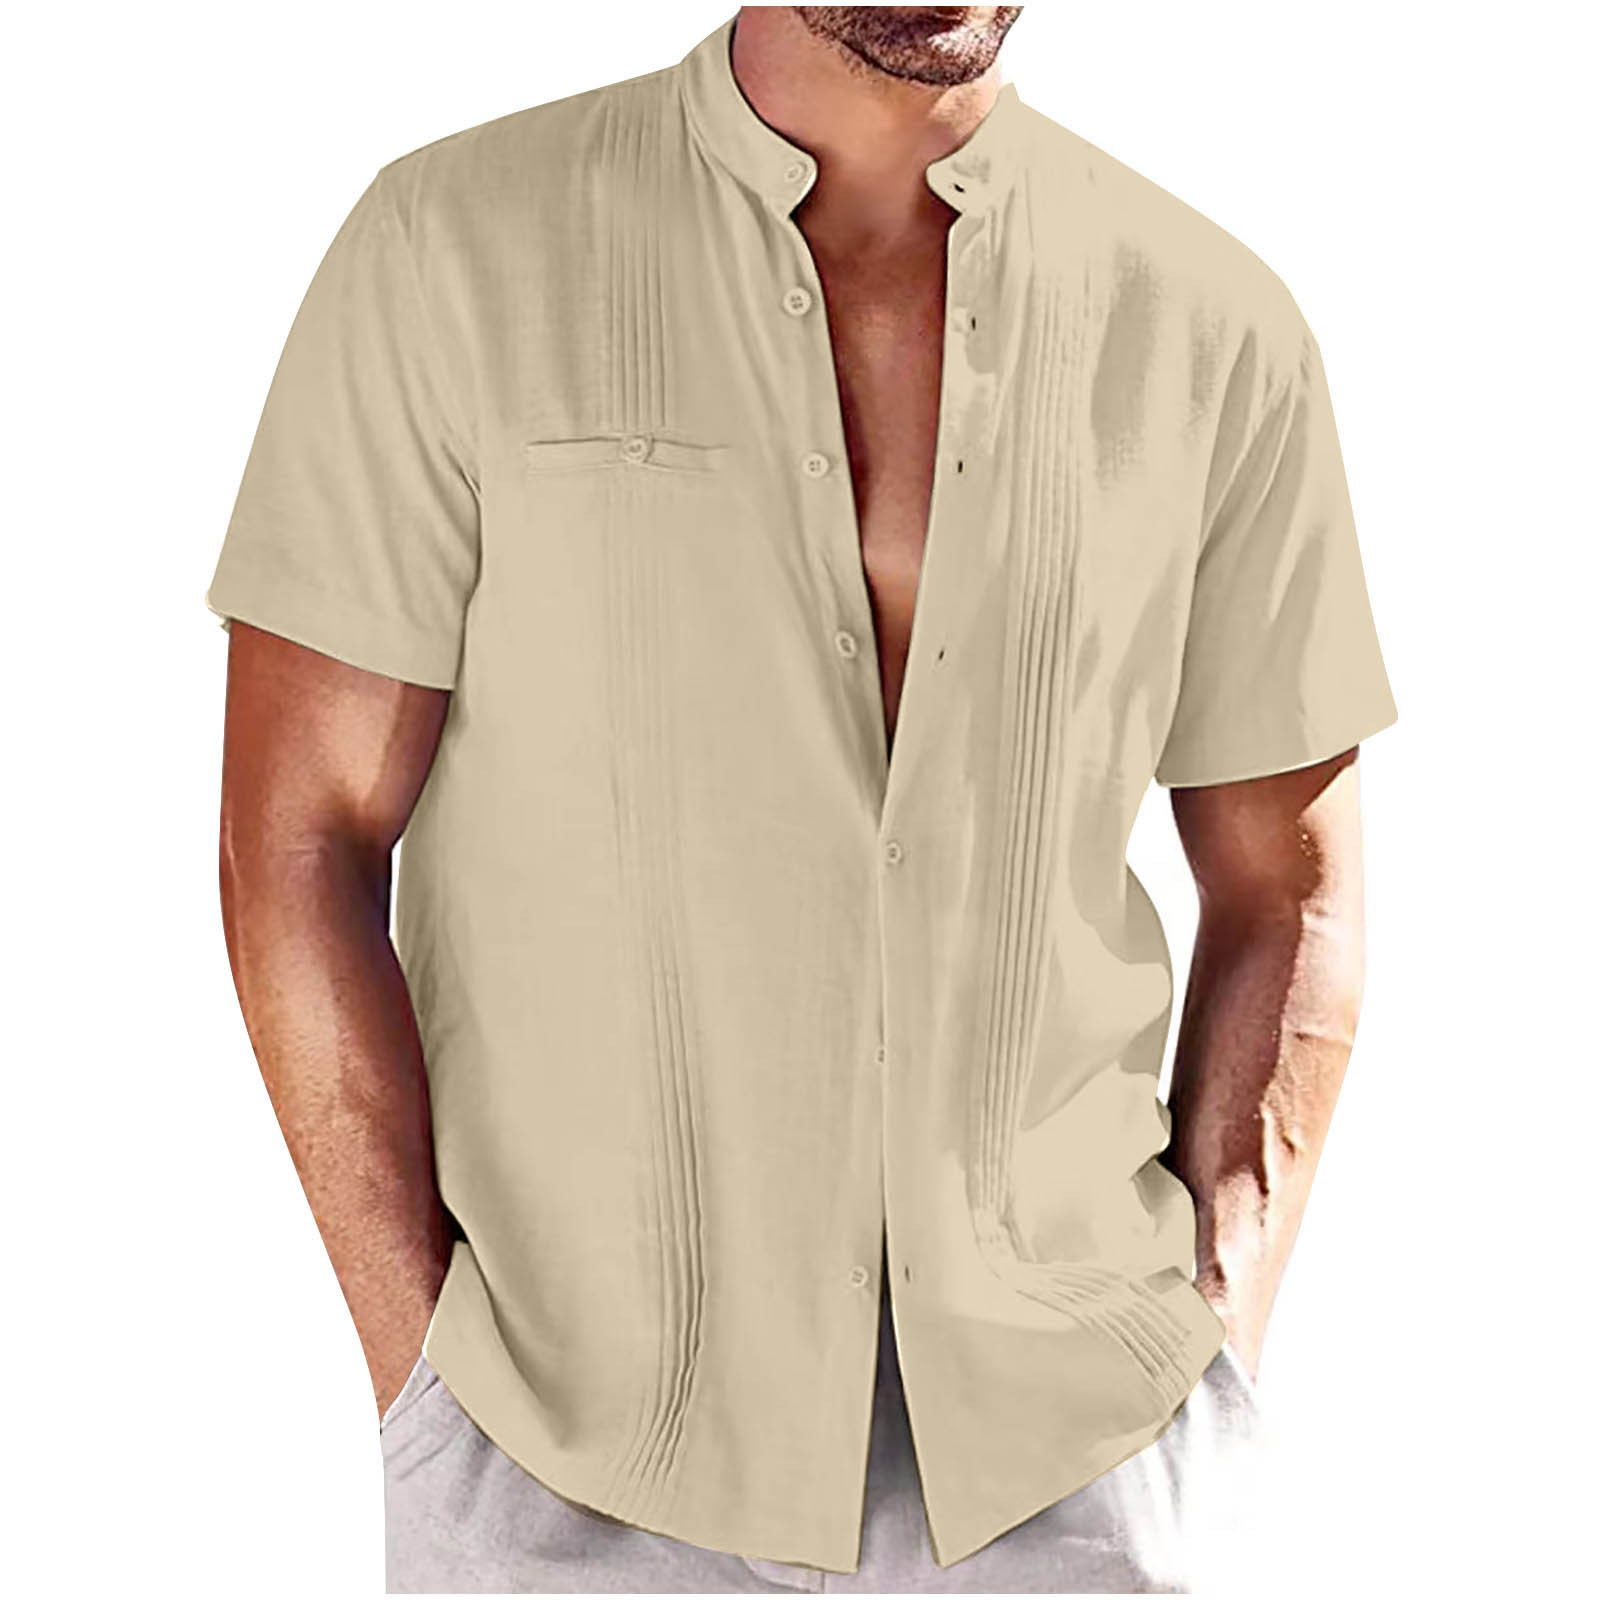 APEXFWDT Mens Short Sleeve Cuban Guayabera Shirt Casual Linen Summer ...